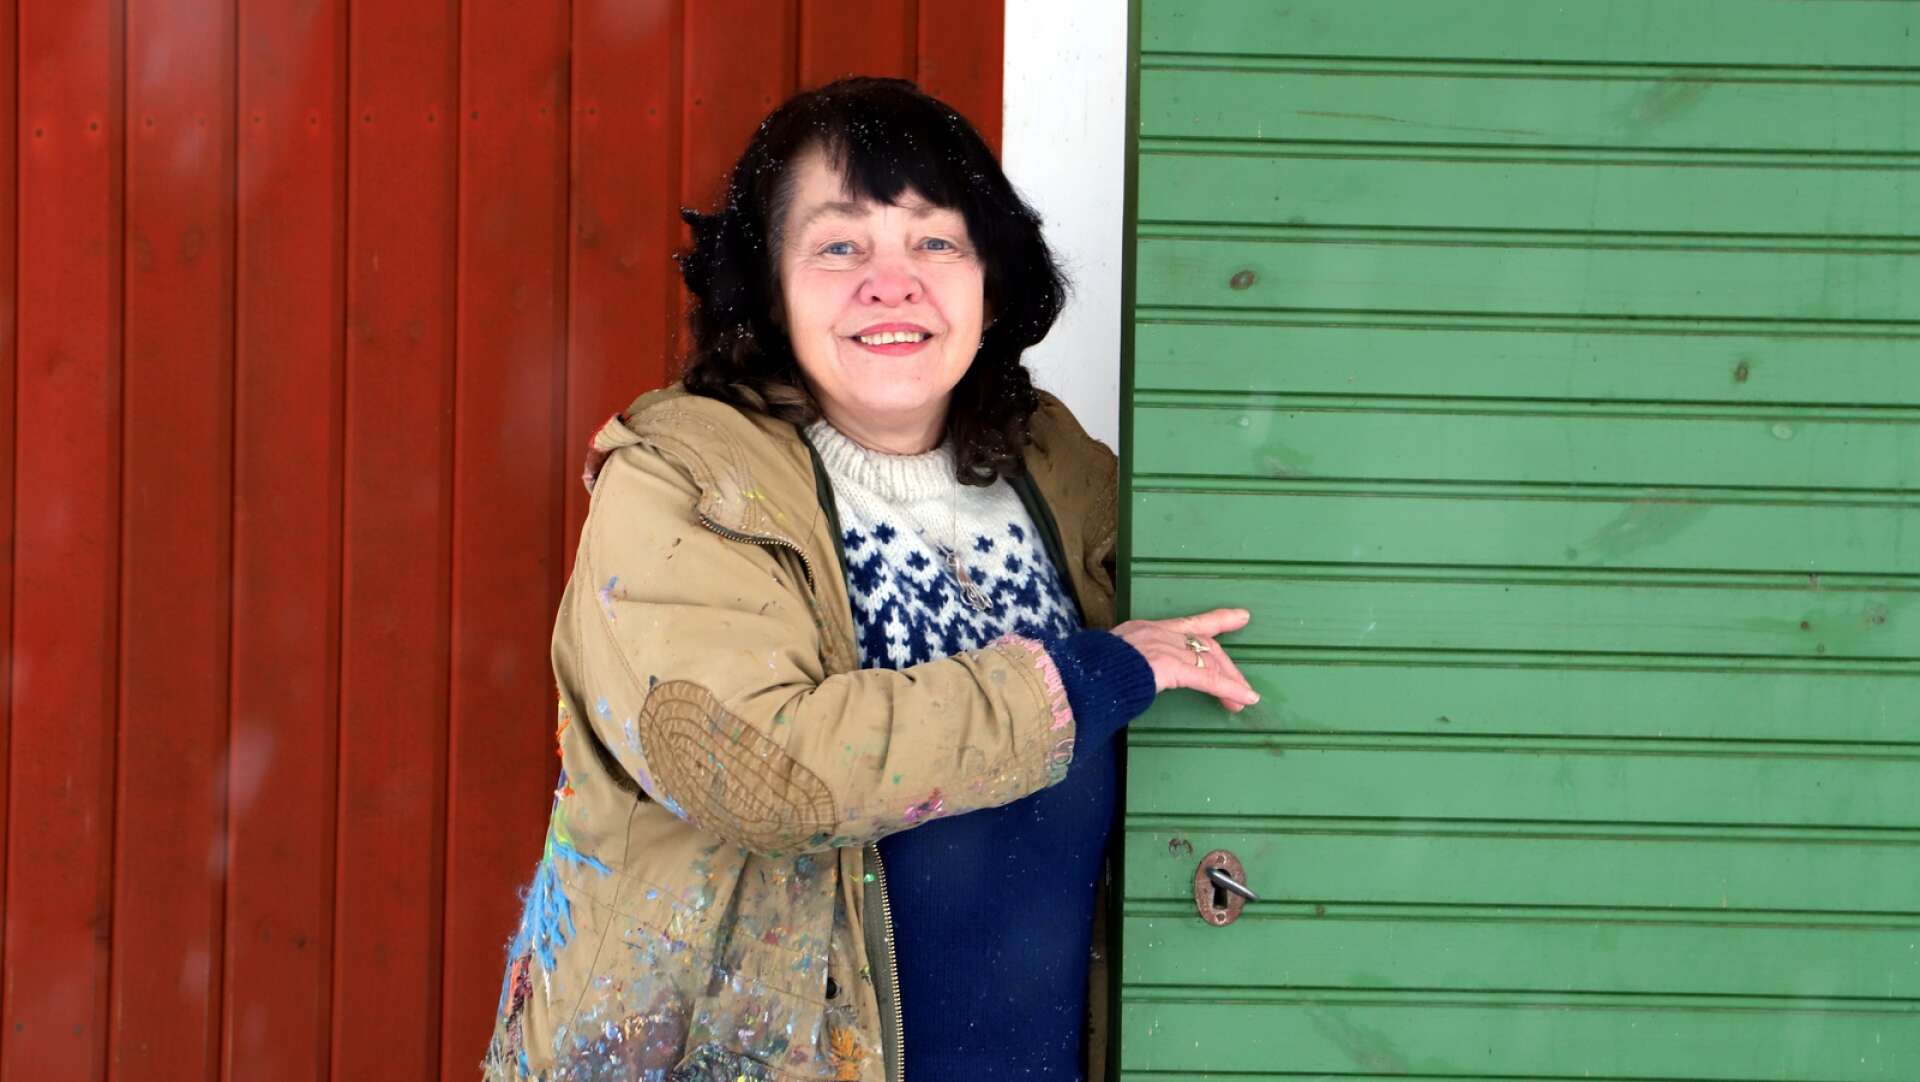 Konstnären Marja i Myrom har avlidit i sviterna av cancer. Hon blev 65 år gammal.